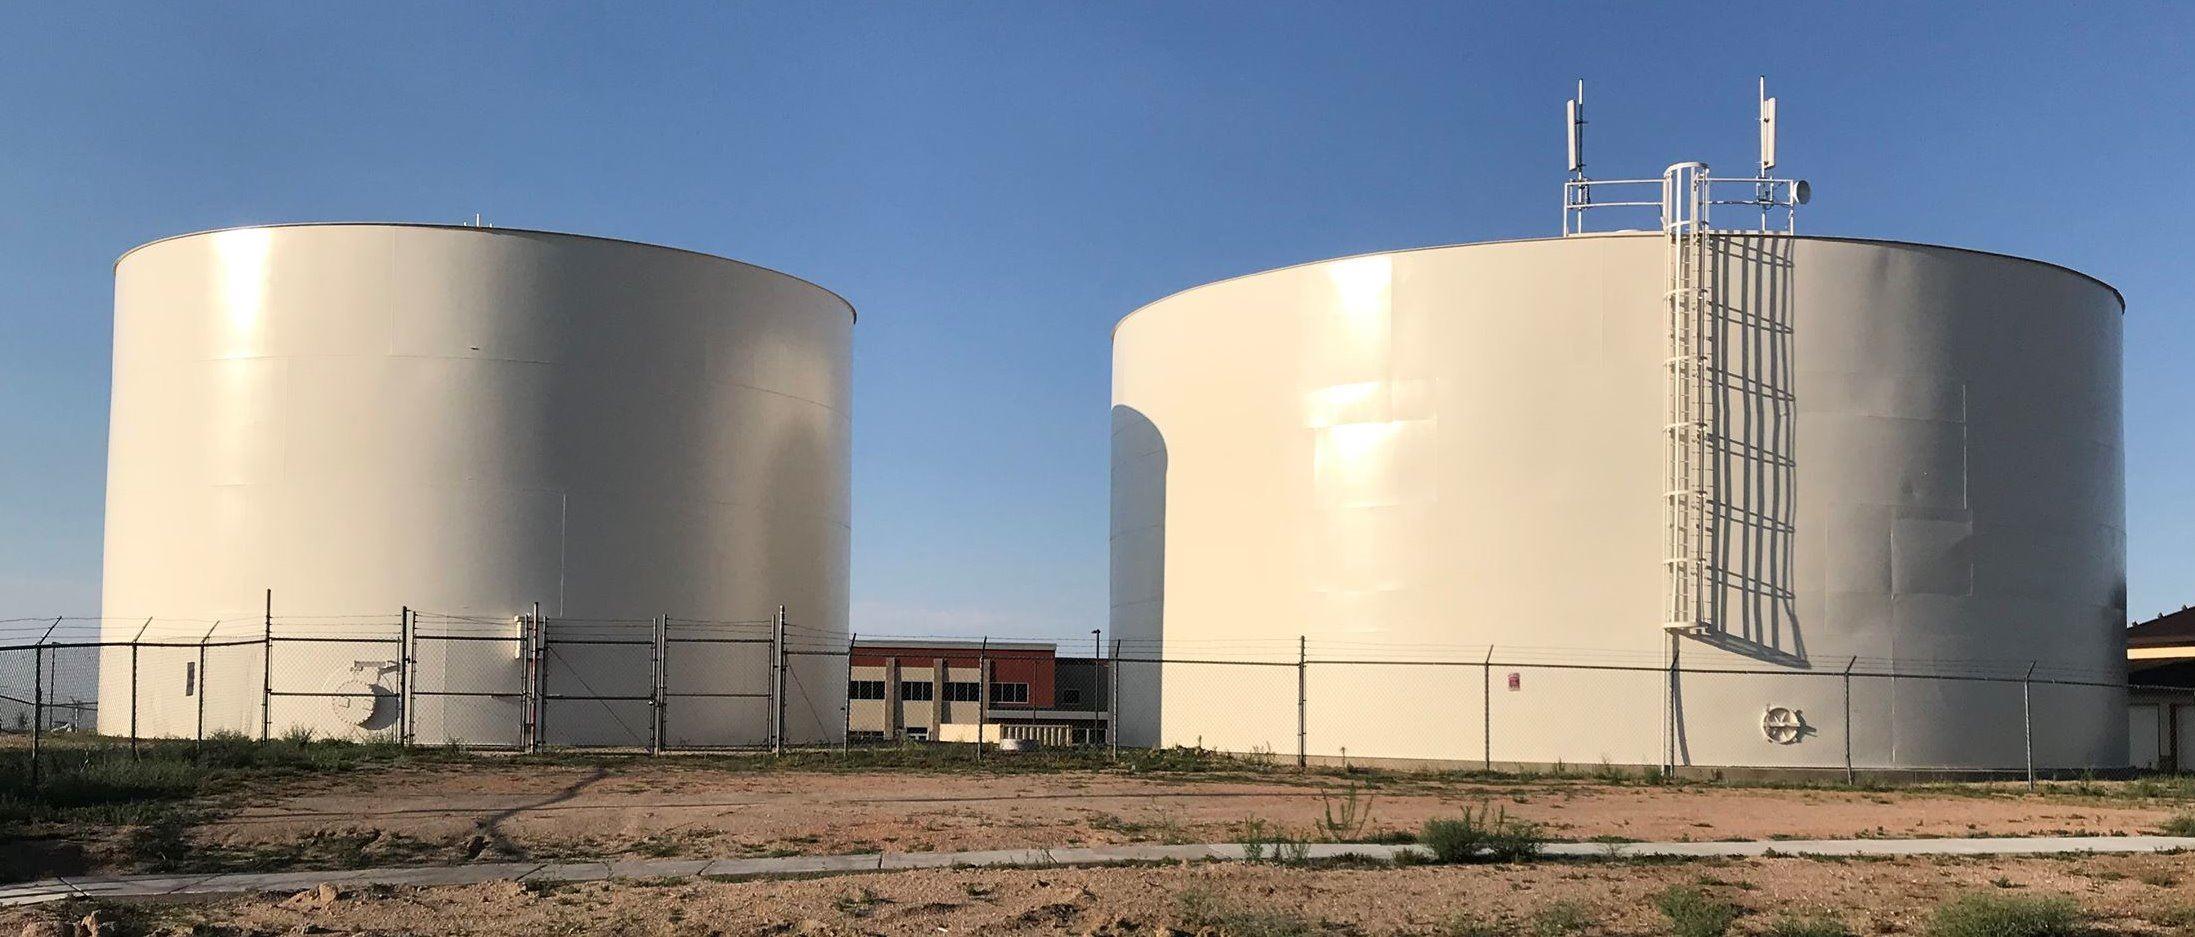 Two large water storage tanks